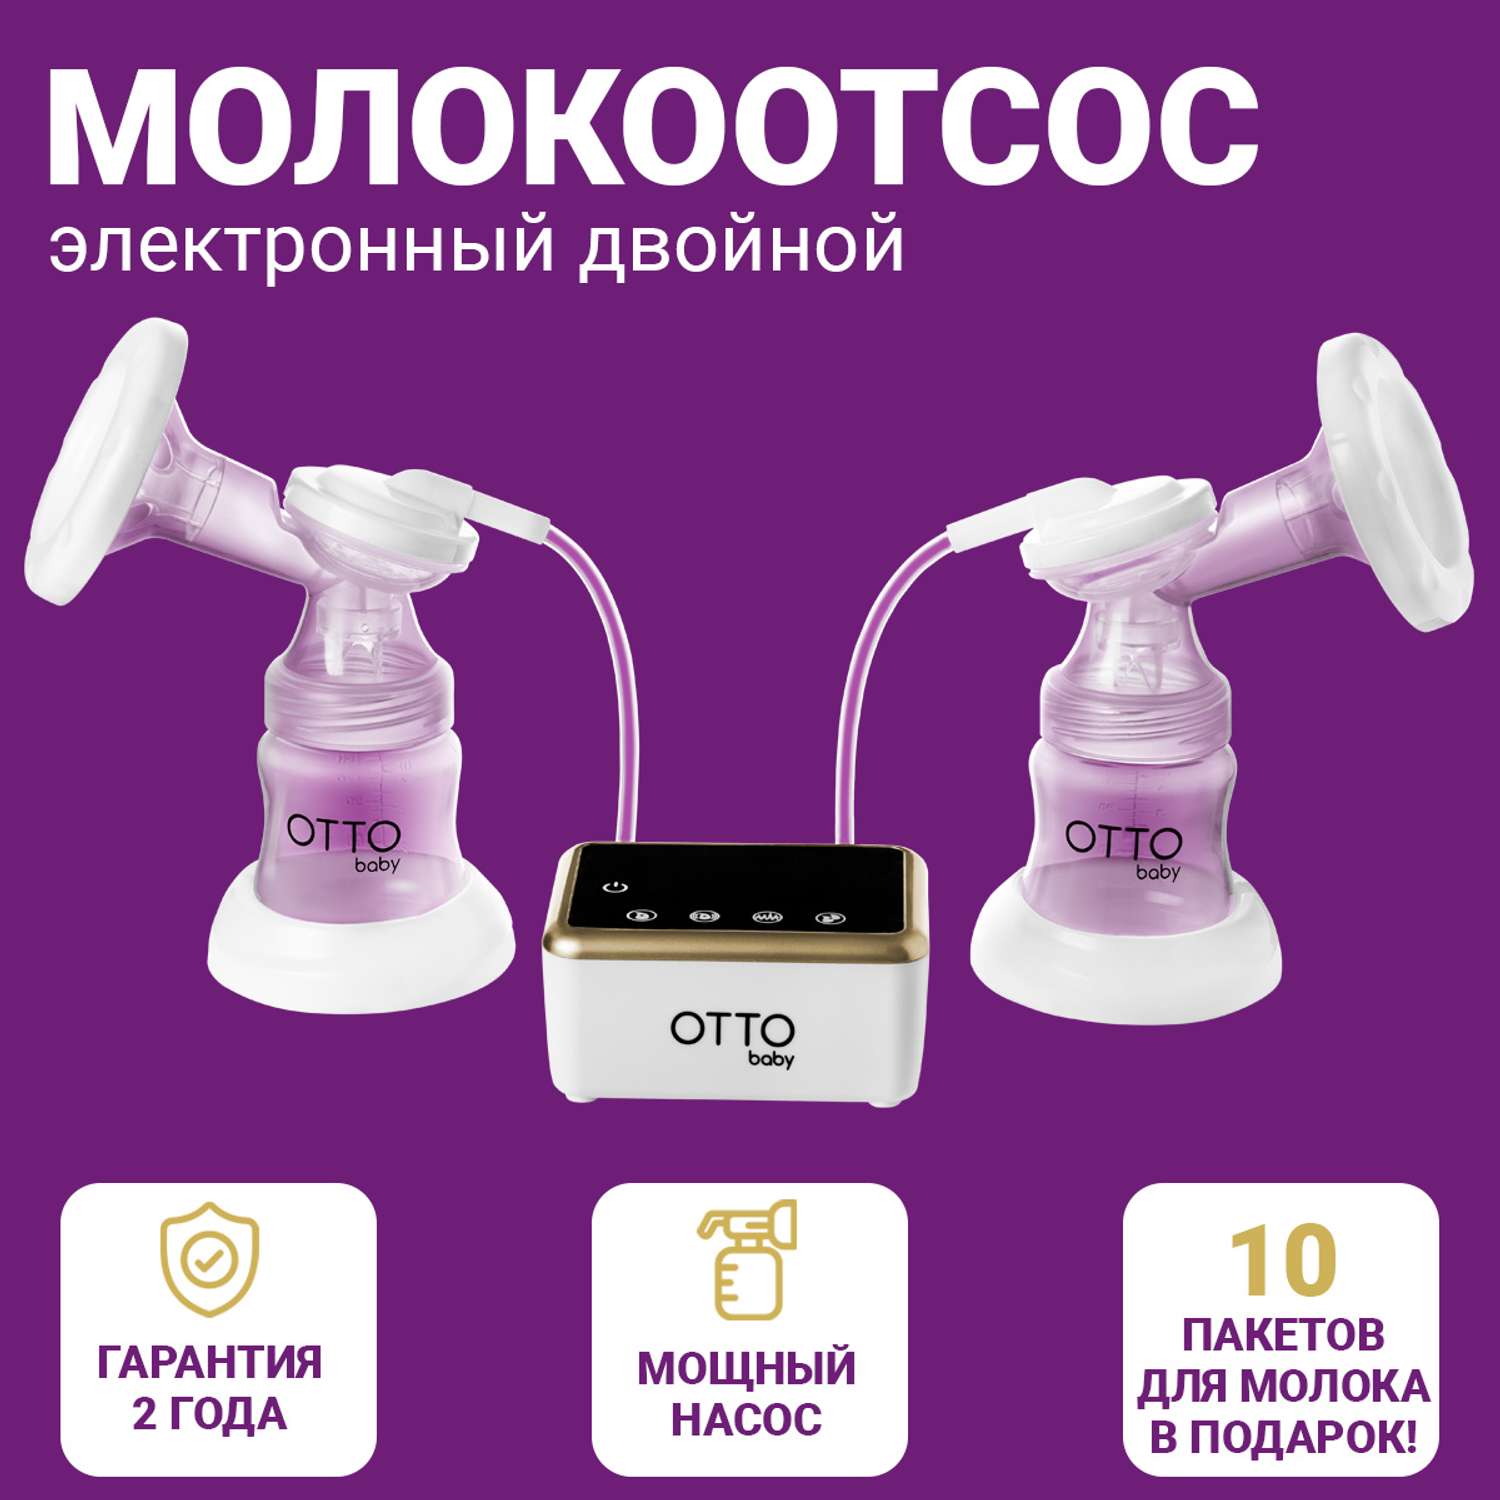 Молокоотсос Otto Baby двойной электрический беспроводной +2 бутылочки + 2 соски + 10 пакетов для молока OTB-5211 - фото 1